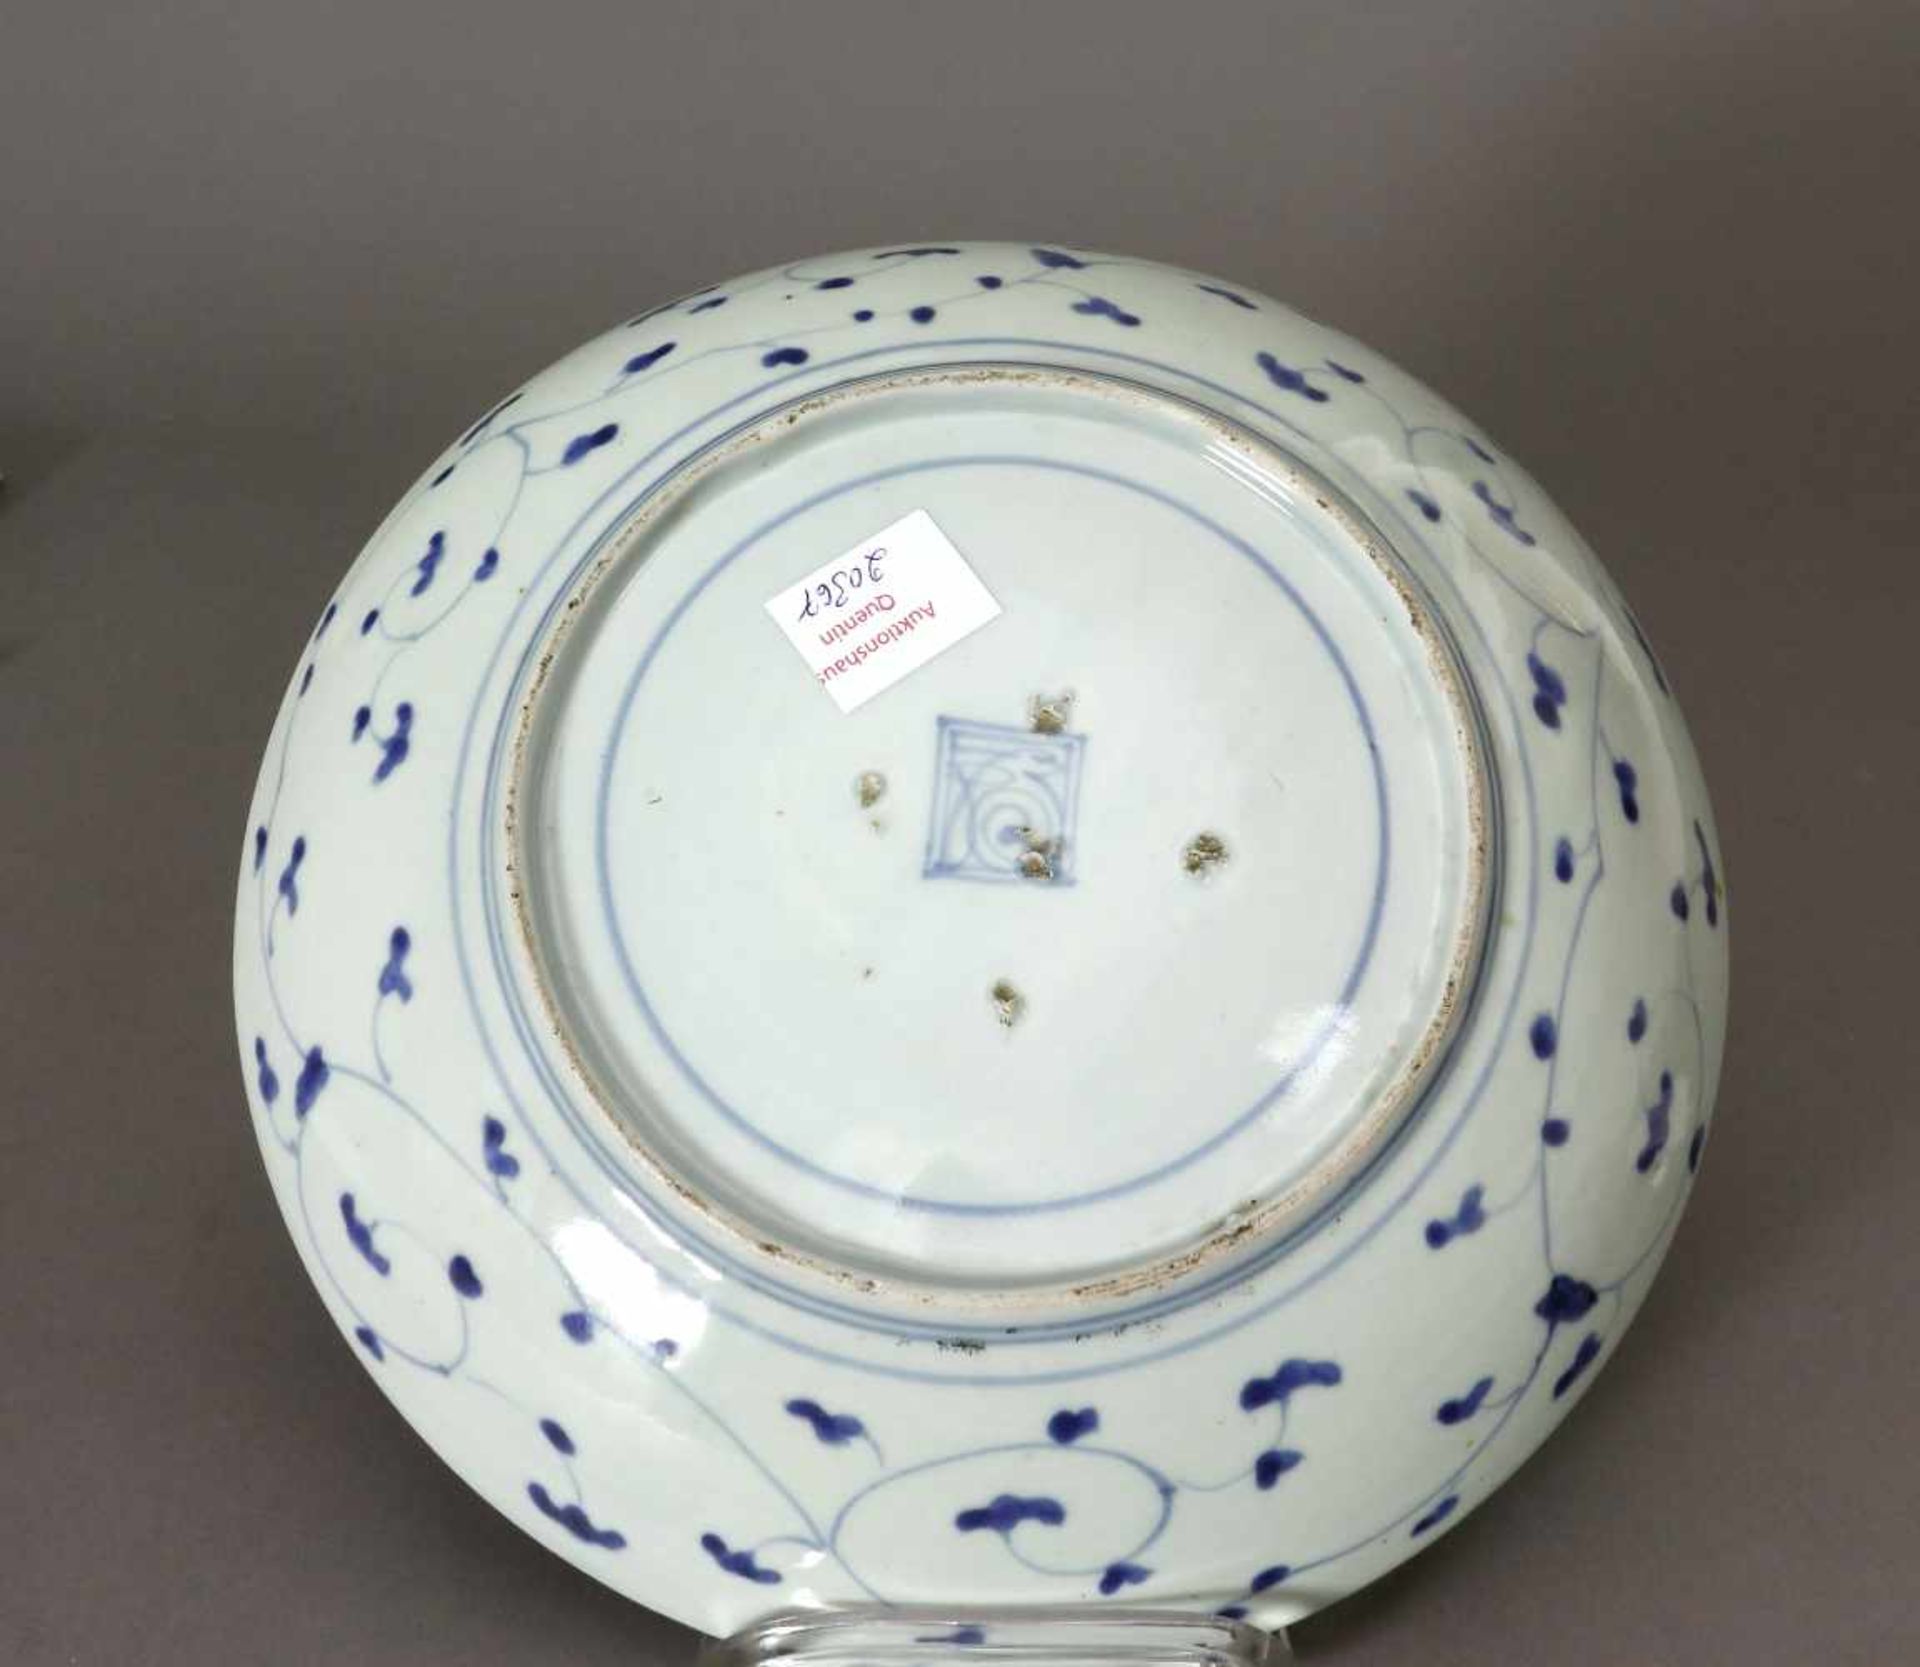 Japan, Schale, Porzellan, Arita, 19. Jh.Rund. Tief gemuldet. Blau/Weiß - Malerei, innen und außen. - Image 3 of 3